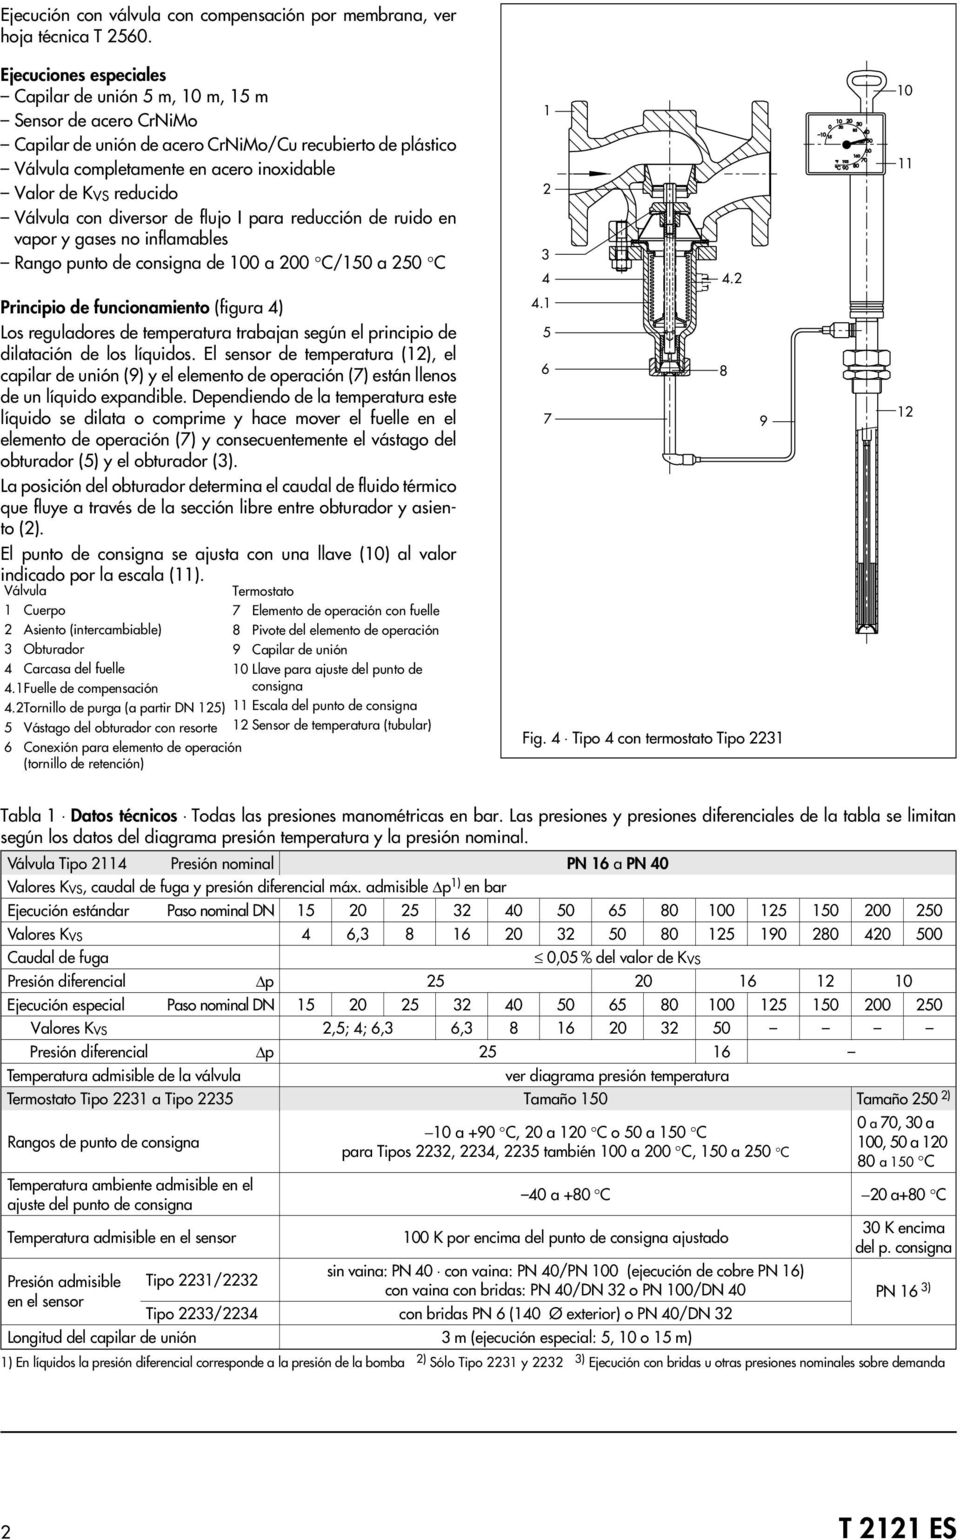 reducido Válvula con diversor de flujo I para reducción de ruido en vapor y gases no inflamables Rango punto de consigna de 100 a 200 C/150 a 250 C Principio de funcionamiento (figura 4) Los